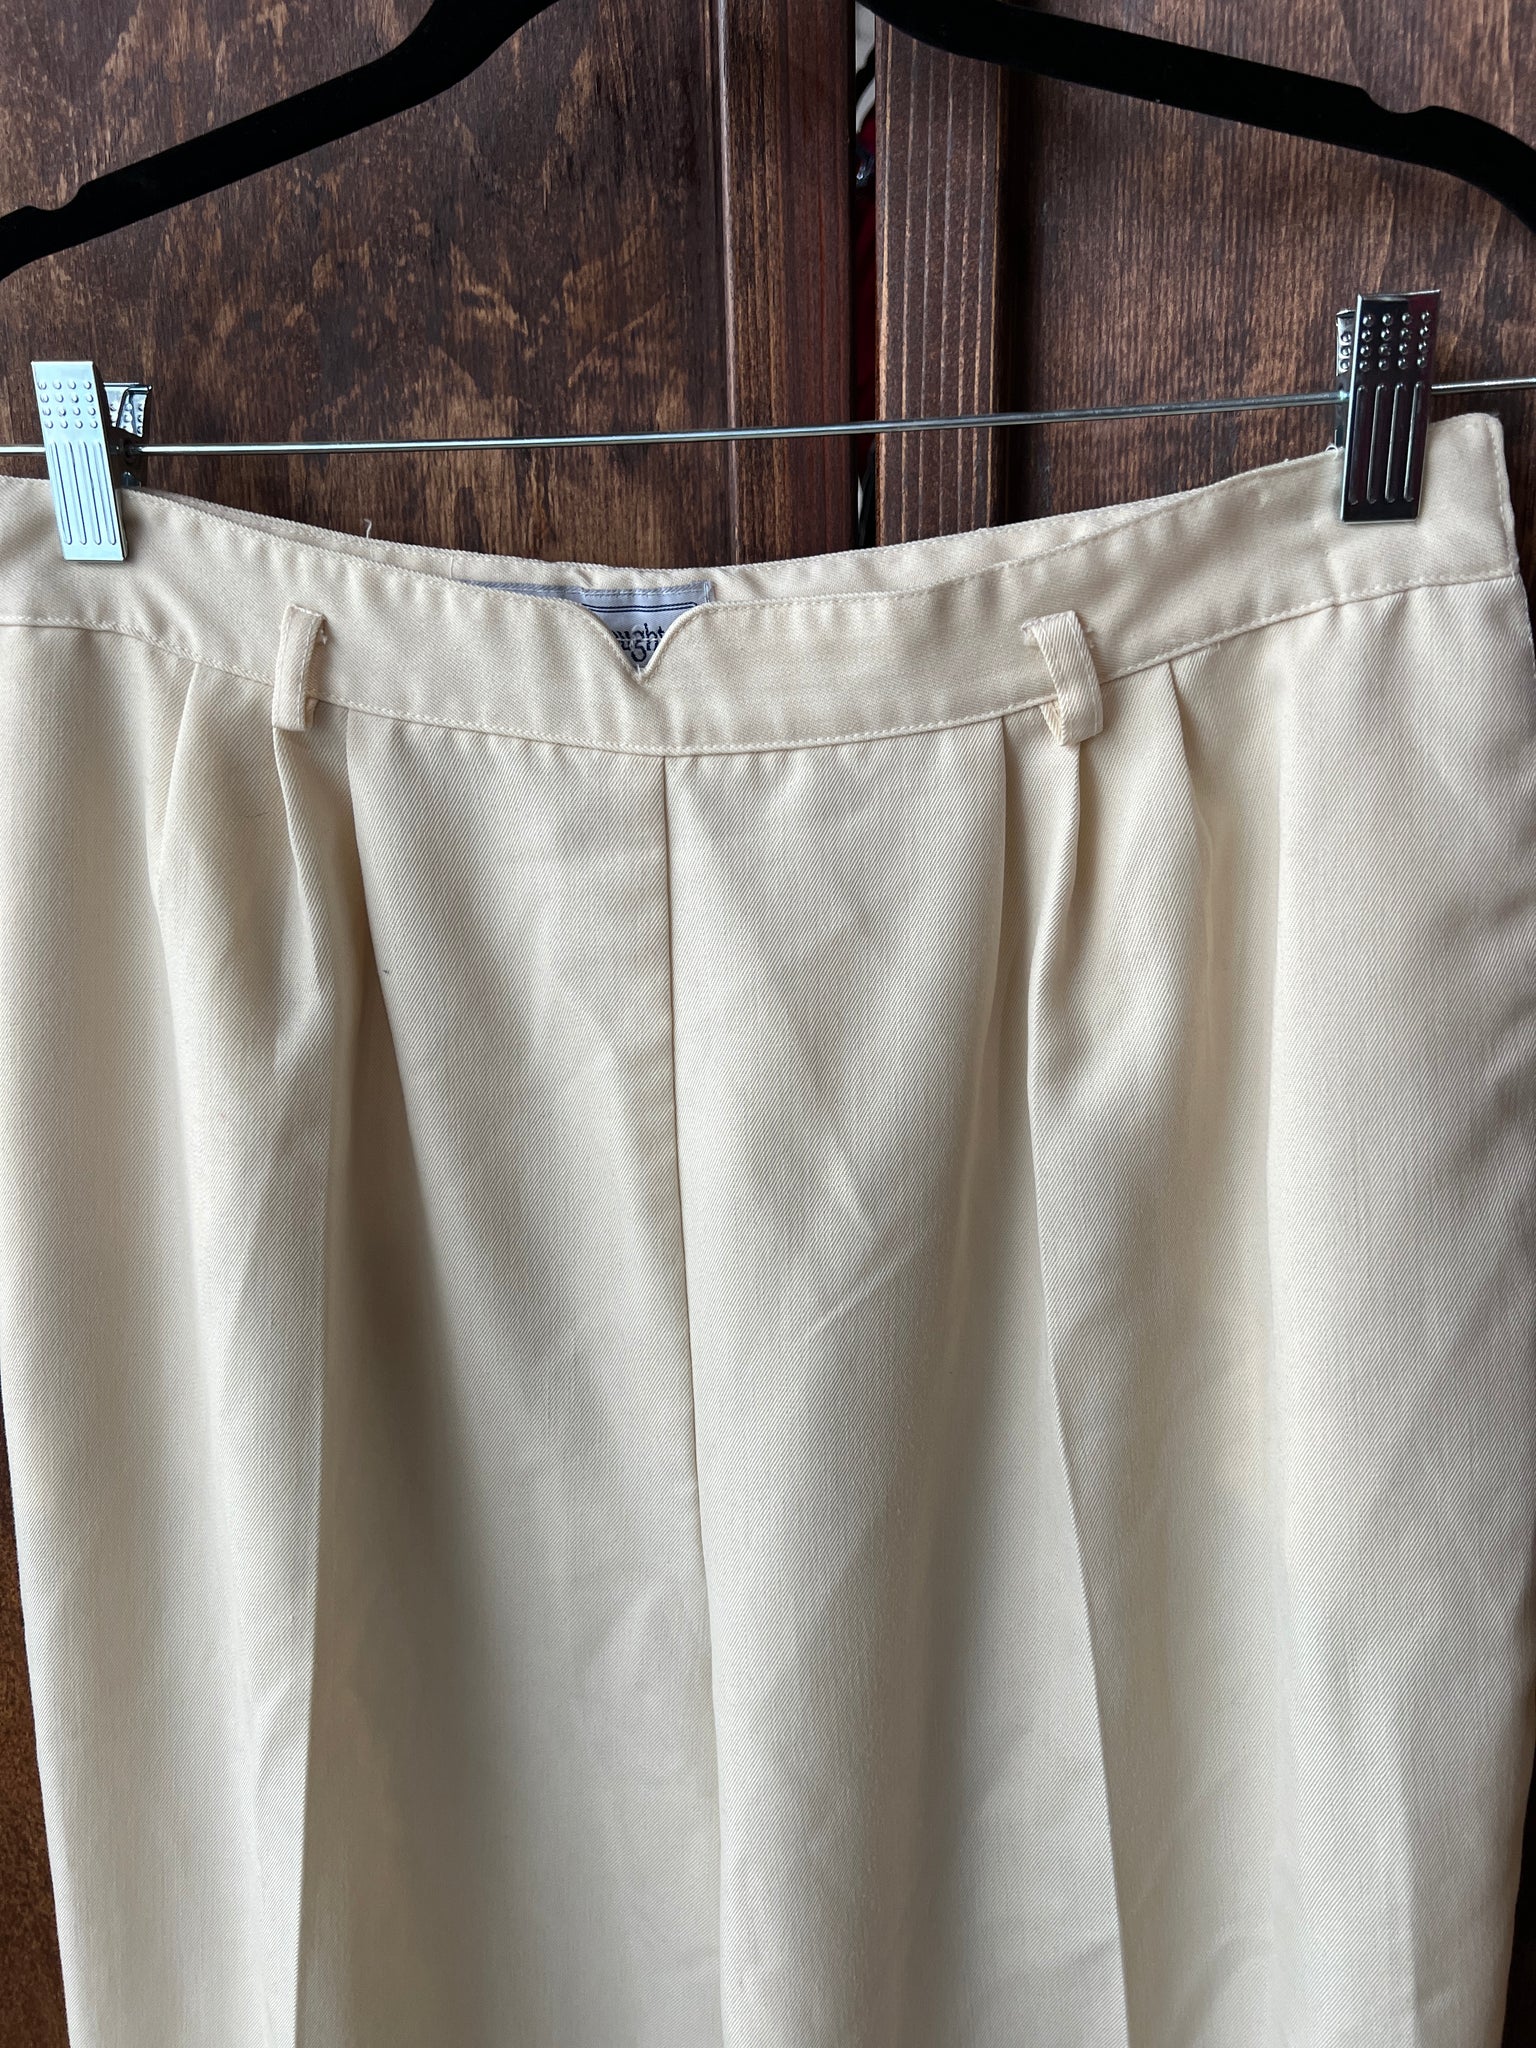 1980s PANTS- Norton McNaughton cream side zip slacks